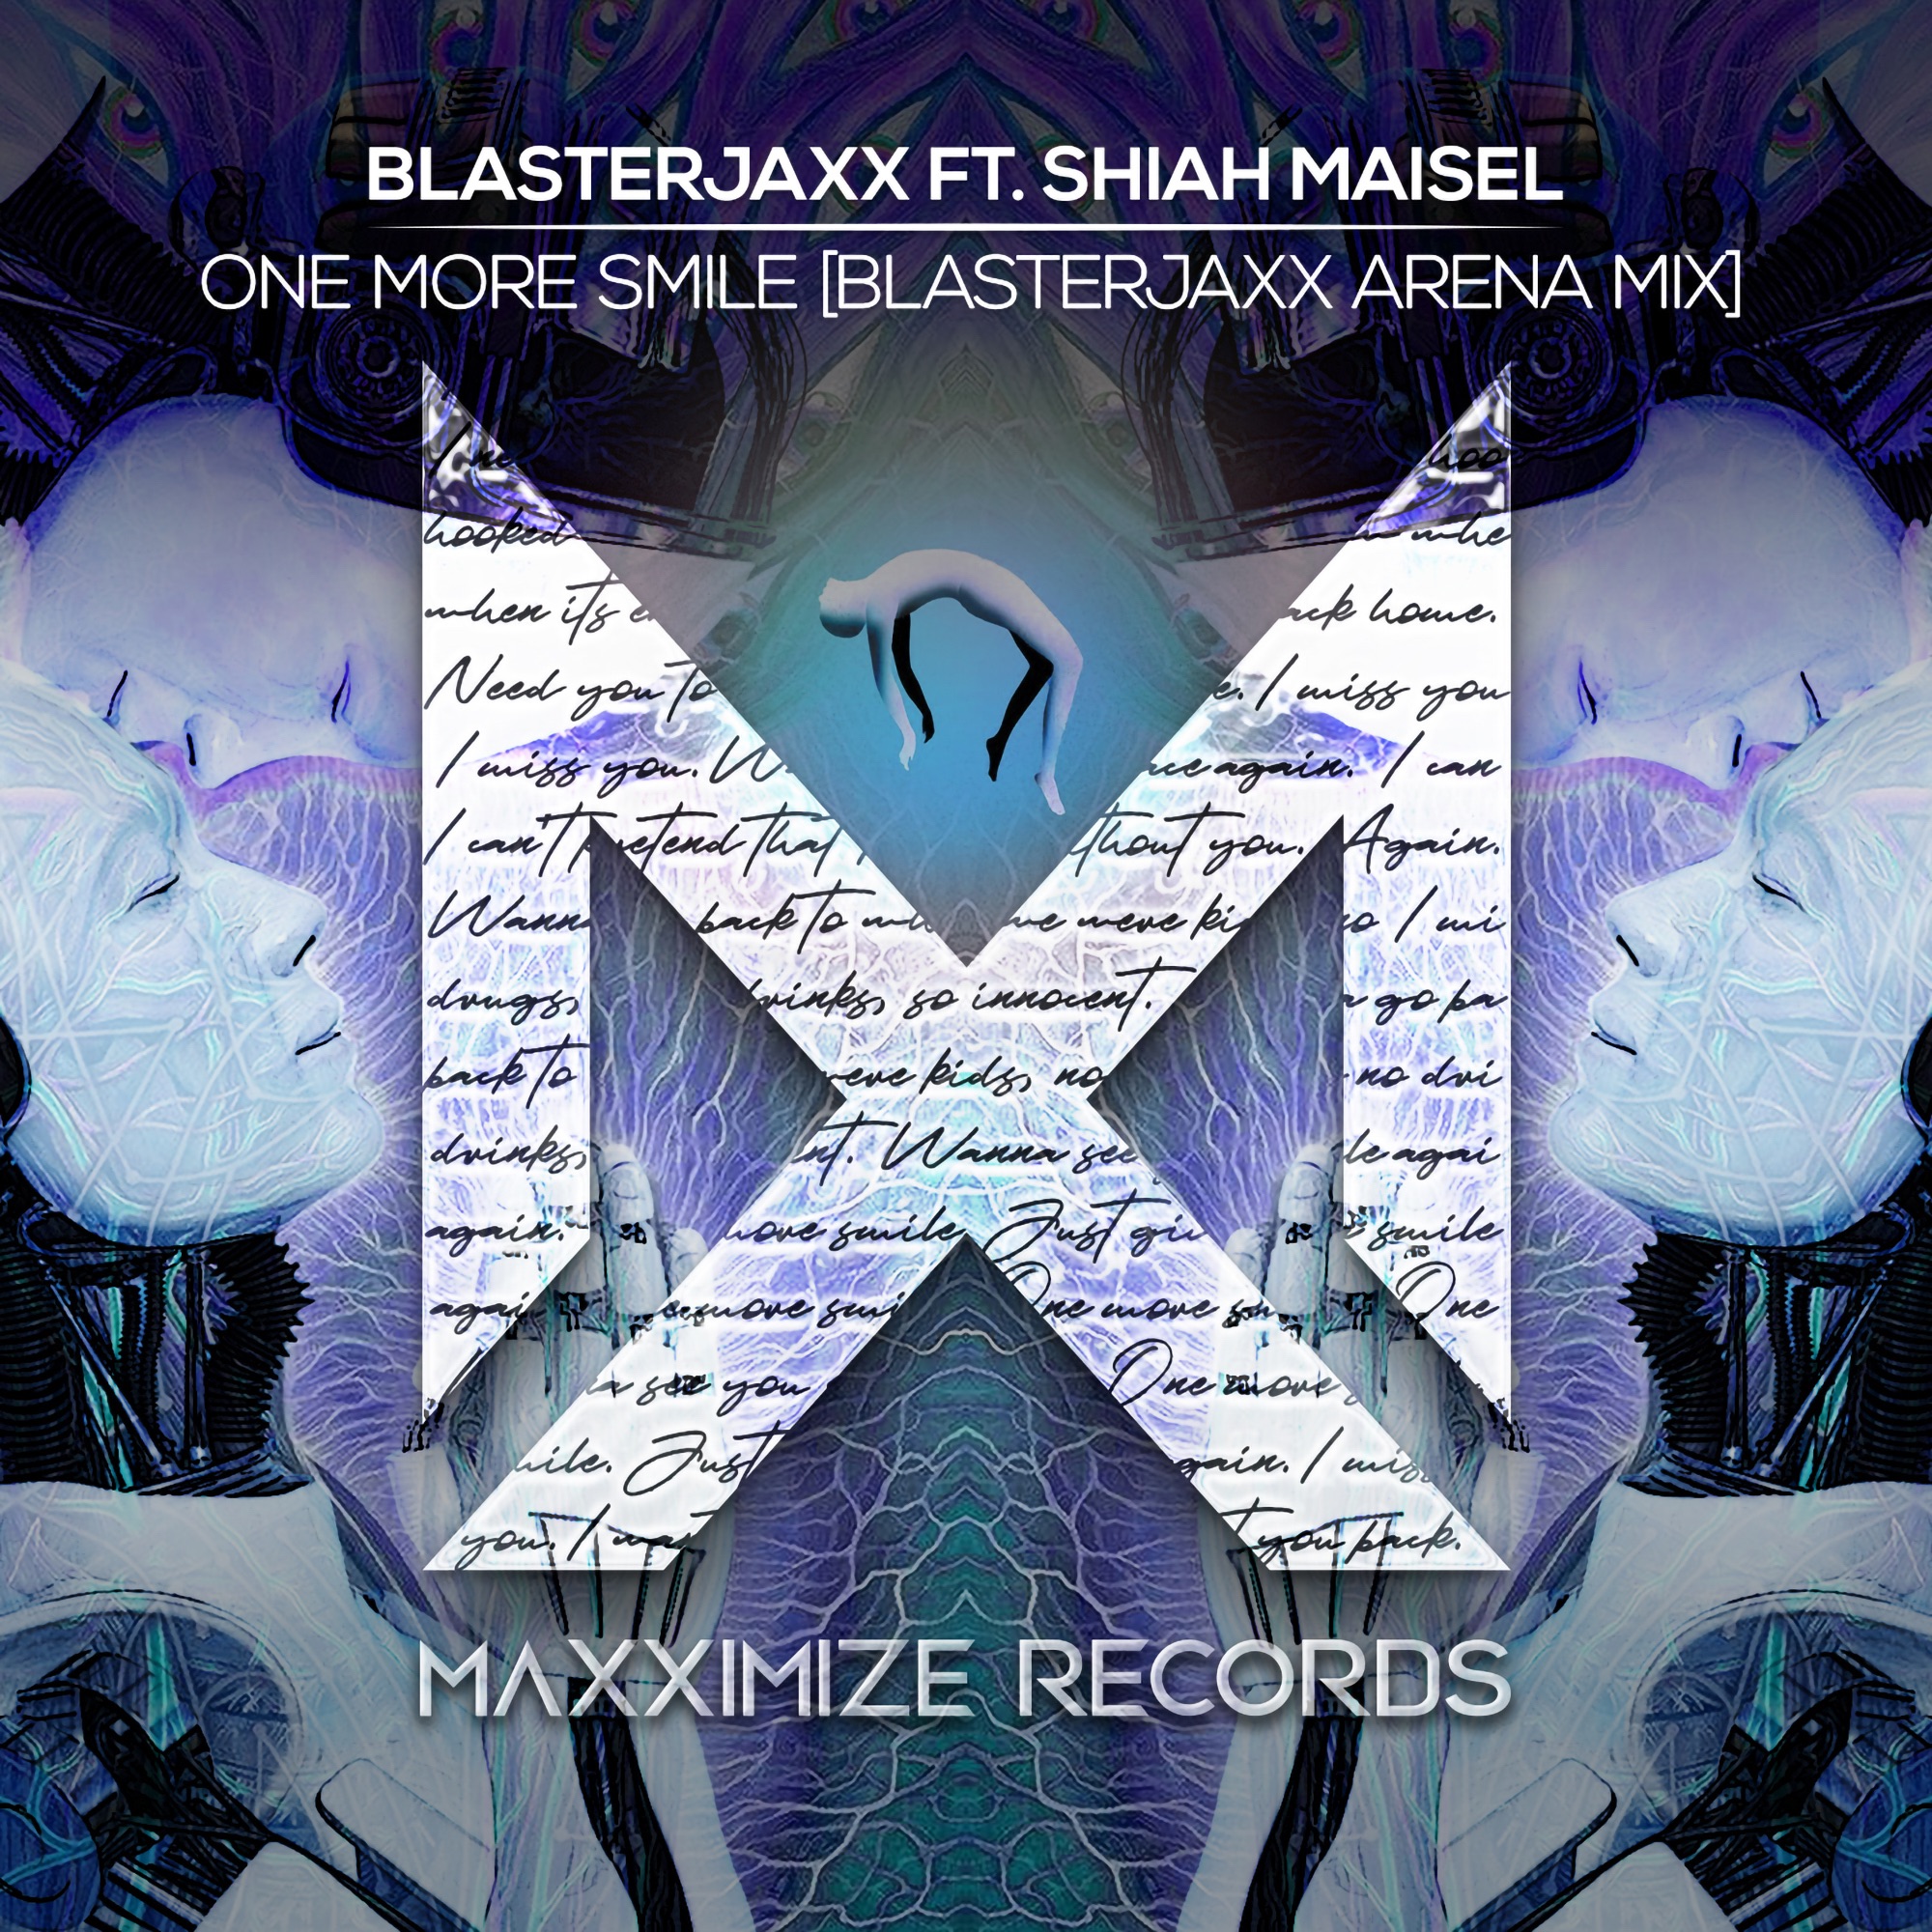 Blasterjaxx - One More Smile (feat. Shiah Maisel) [Blasterjaxx Arena Mix] - Single